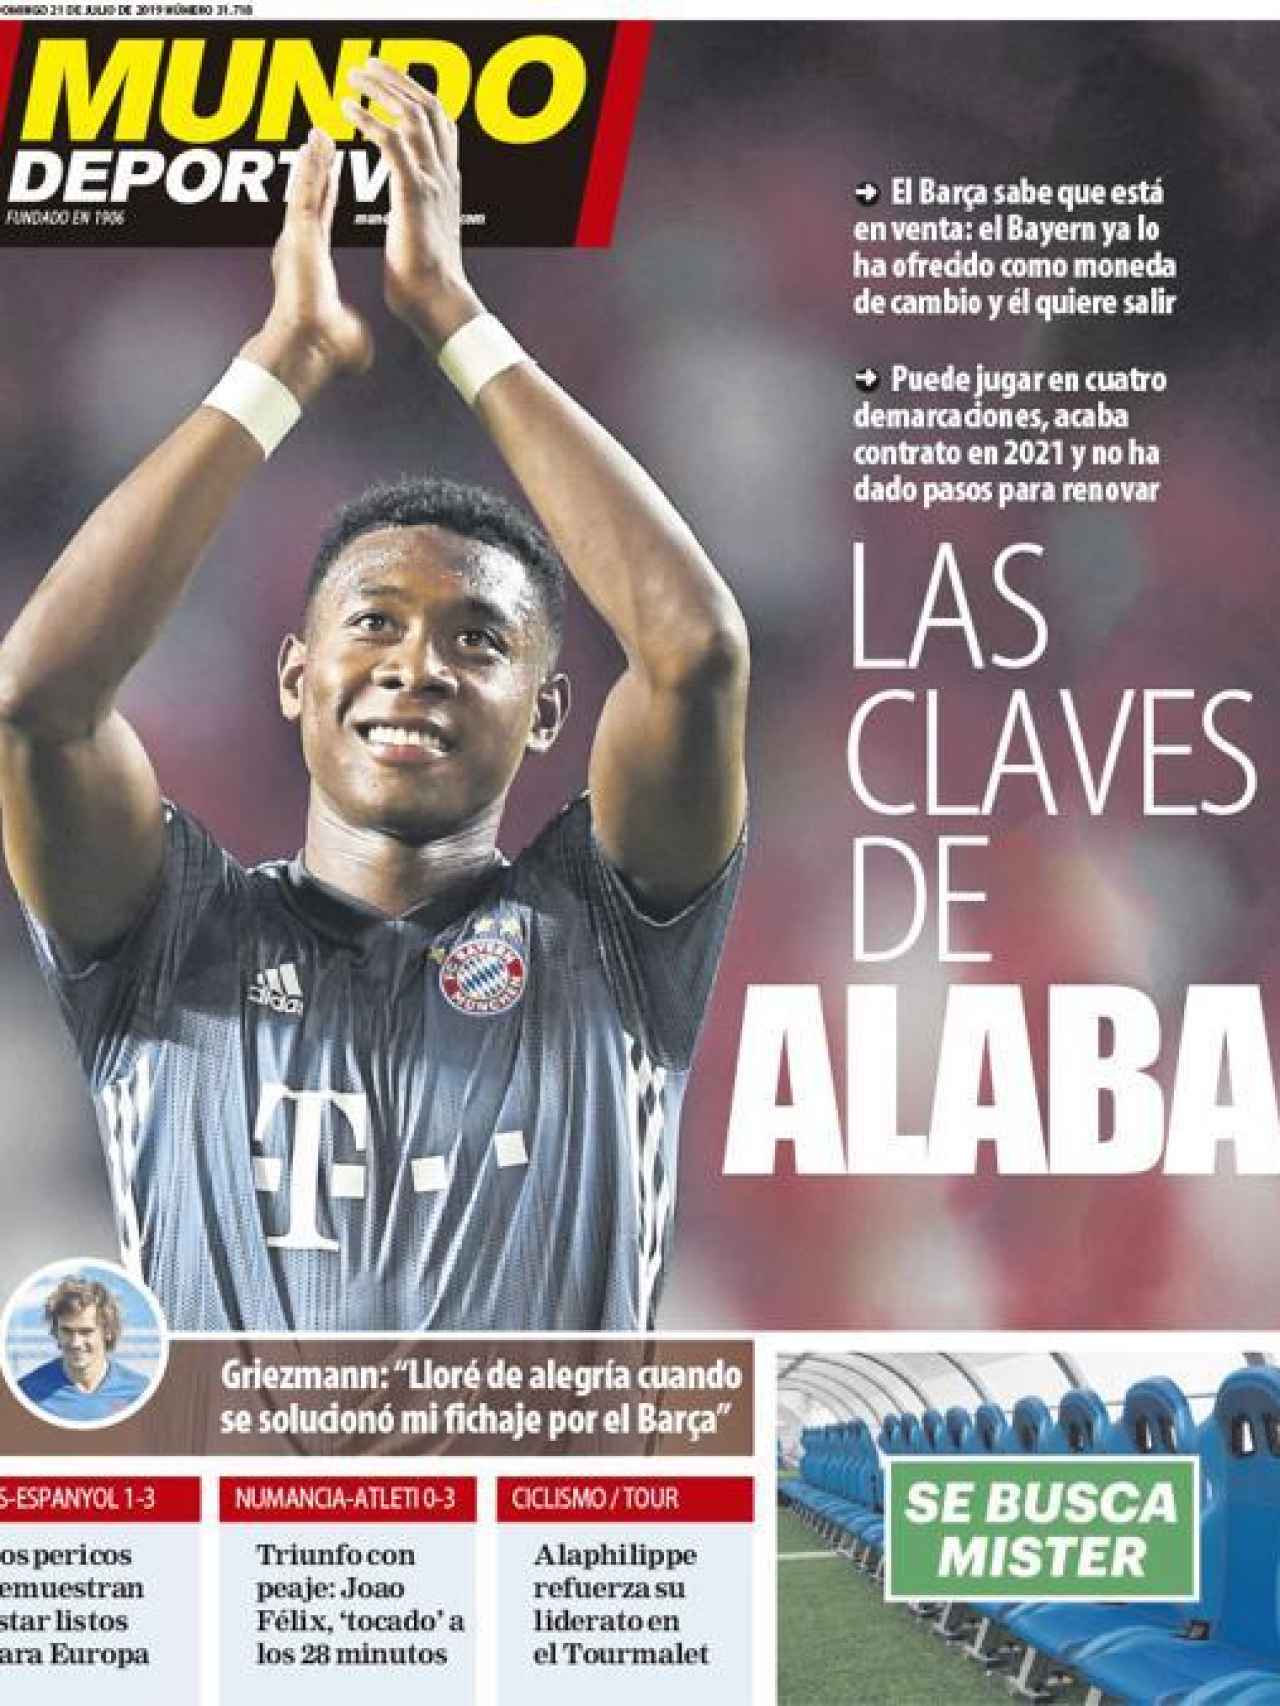 La portada del diario Mundo Deportivo (21/07/2019)